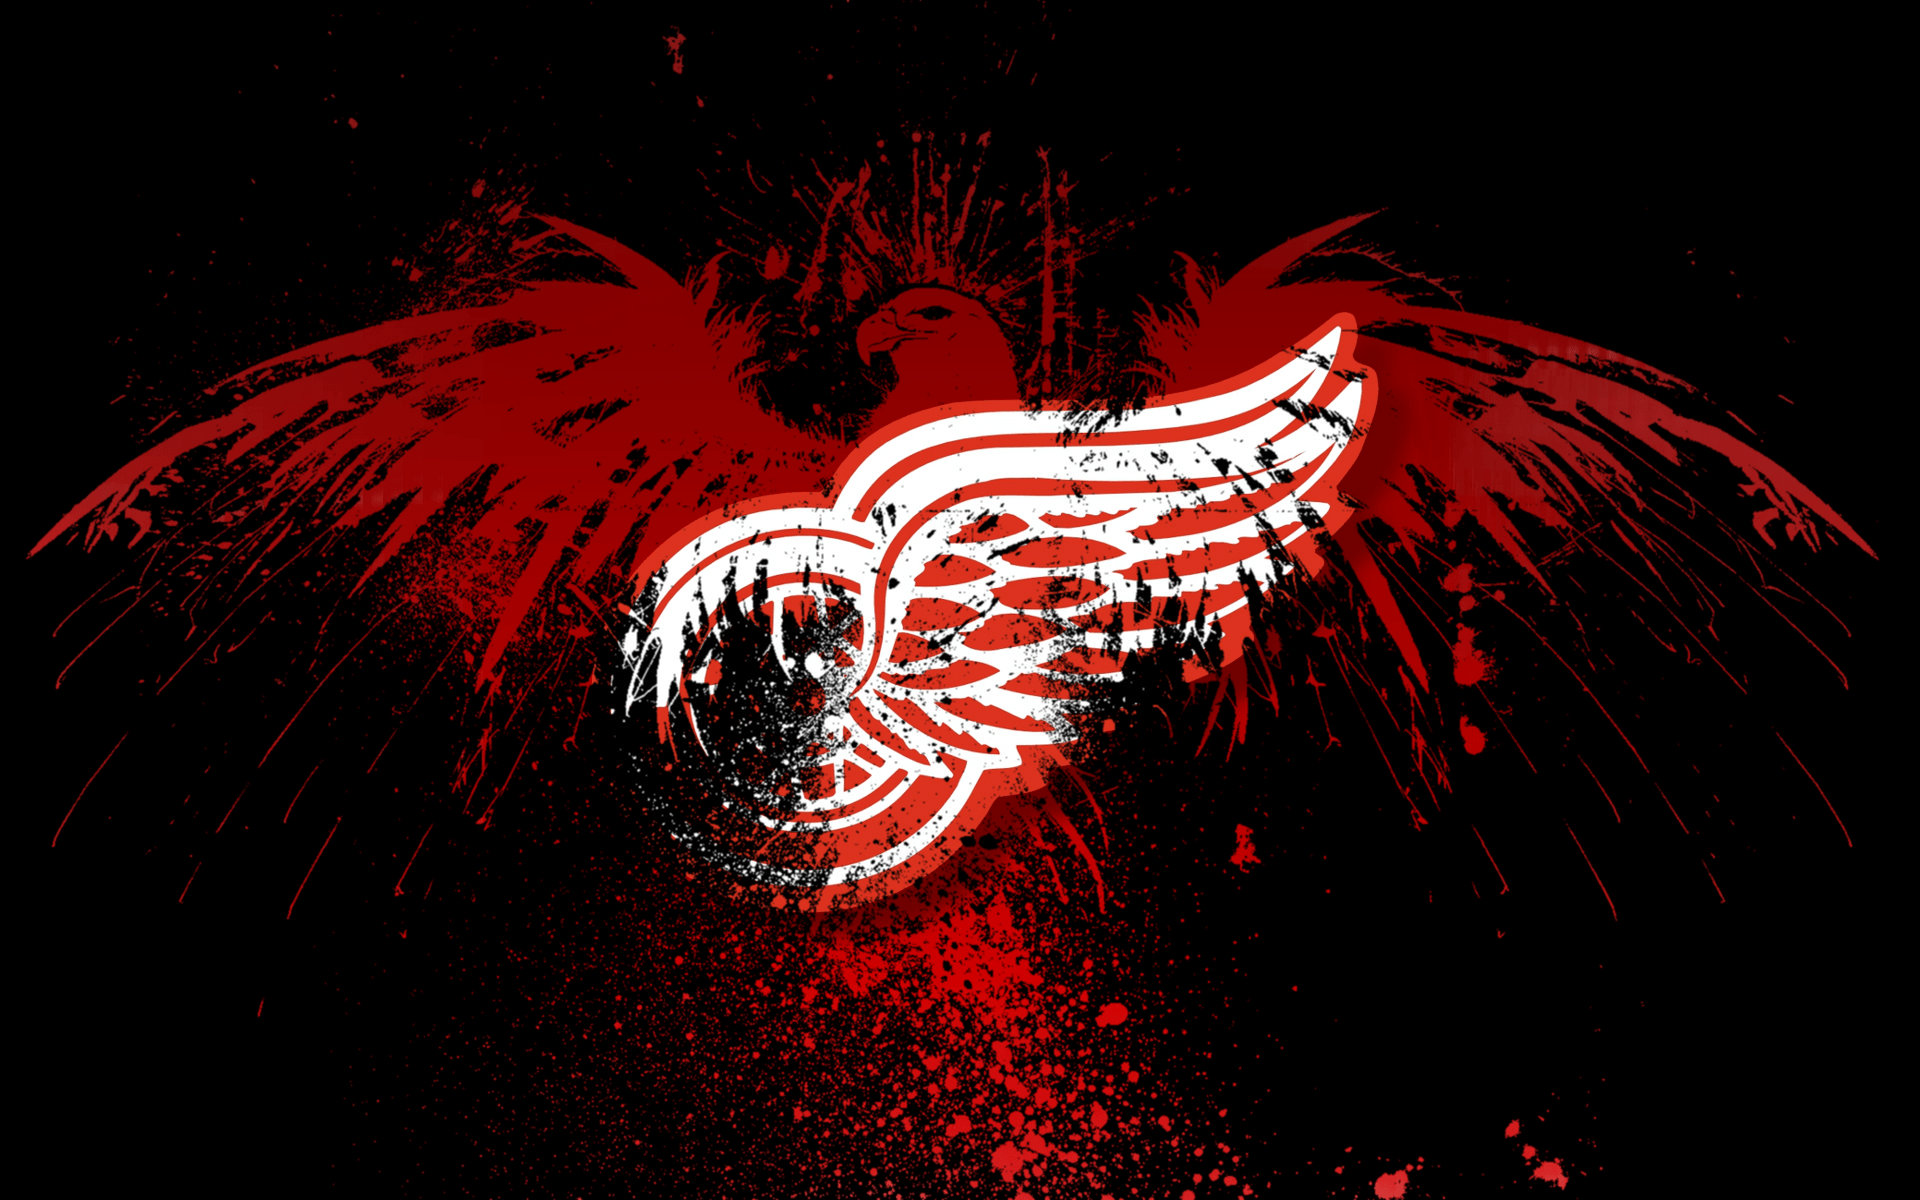 HD Detroit Red Wings Wallpaper